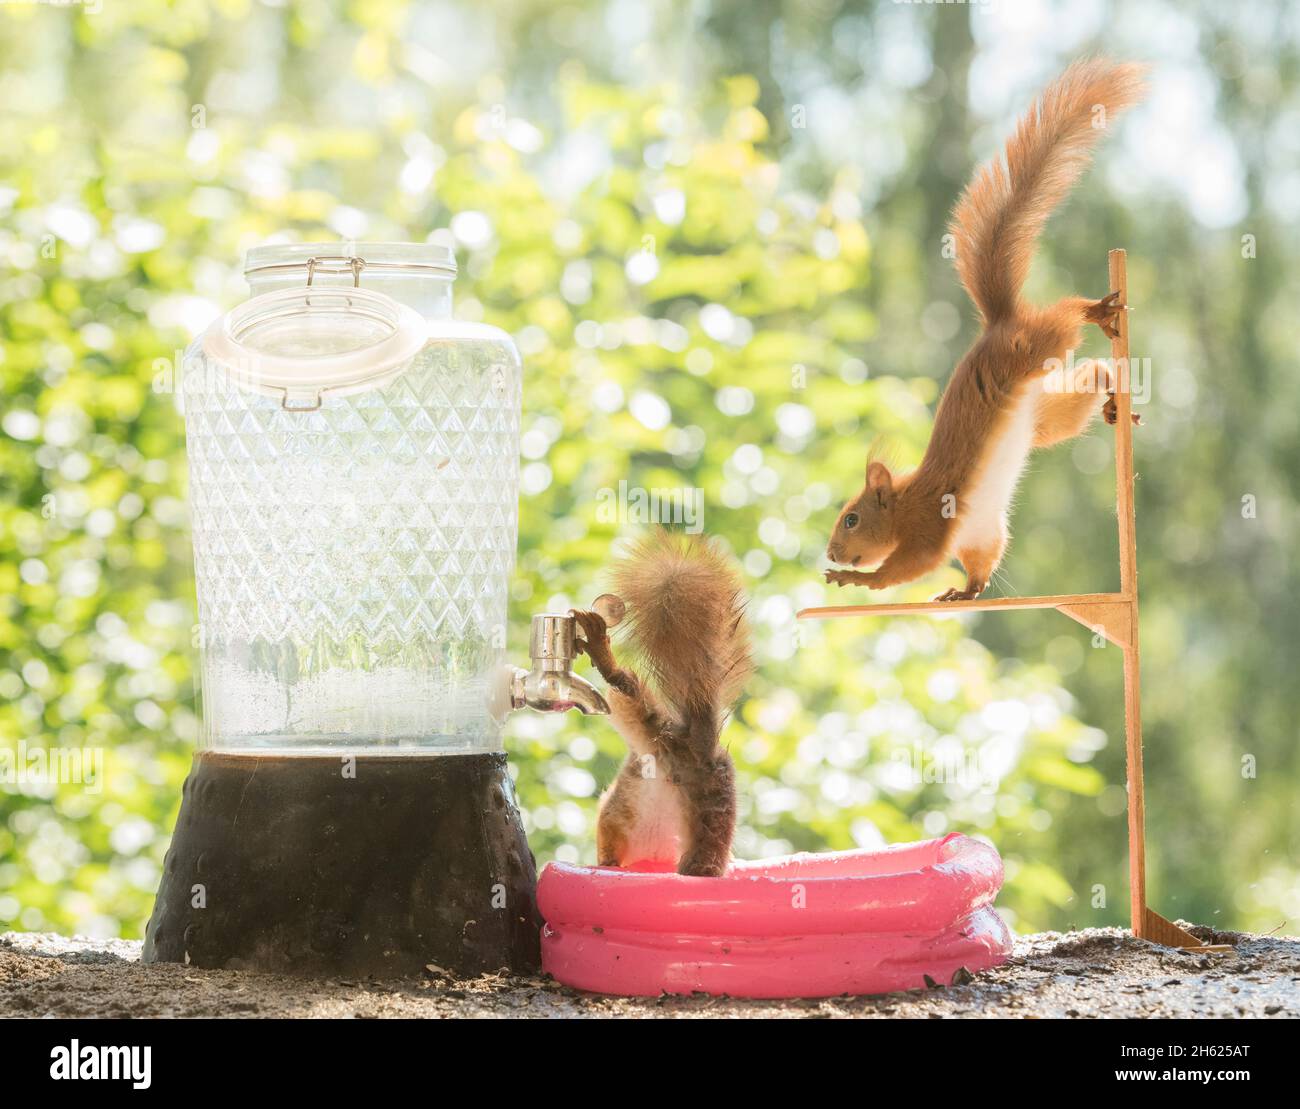 scoiattoli rossi in una piscina d'acqua Foto Stock